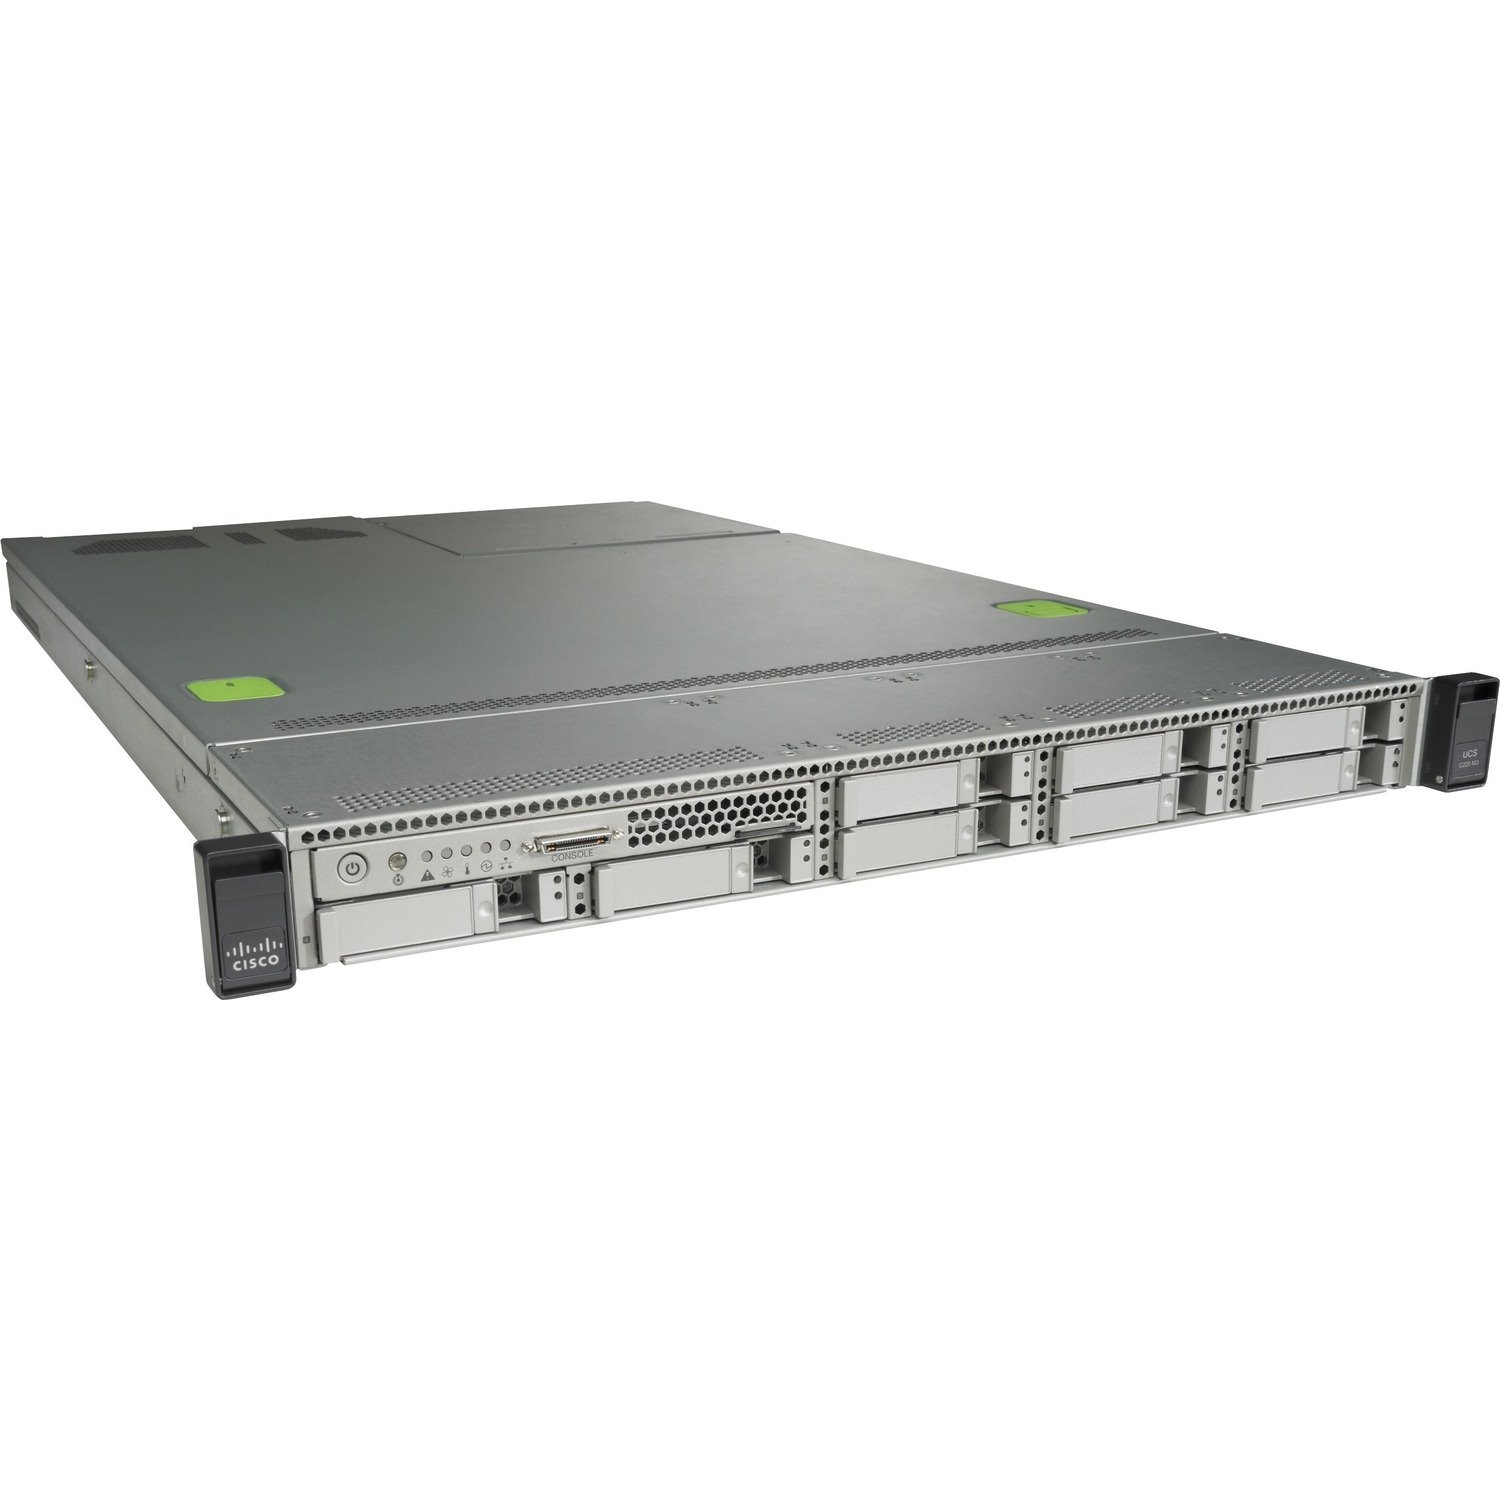 Cisco C220 M3 1U Rack Server - 2 x Intel 3.30 GHz - 64 GB RAM - 2.40 TB HDD - (8 x 300GB) HDD Configuration - Serial ATA/300 Controller - Refurbished